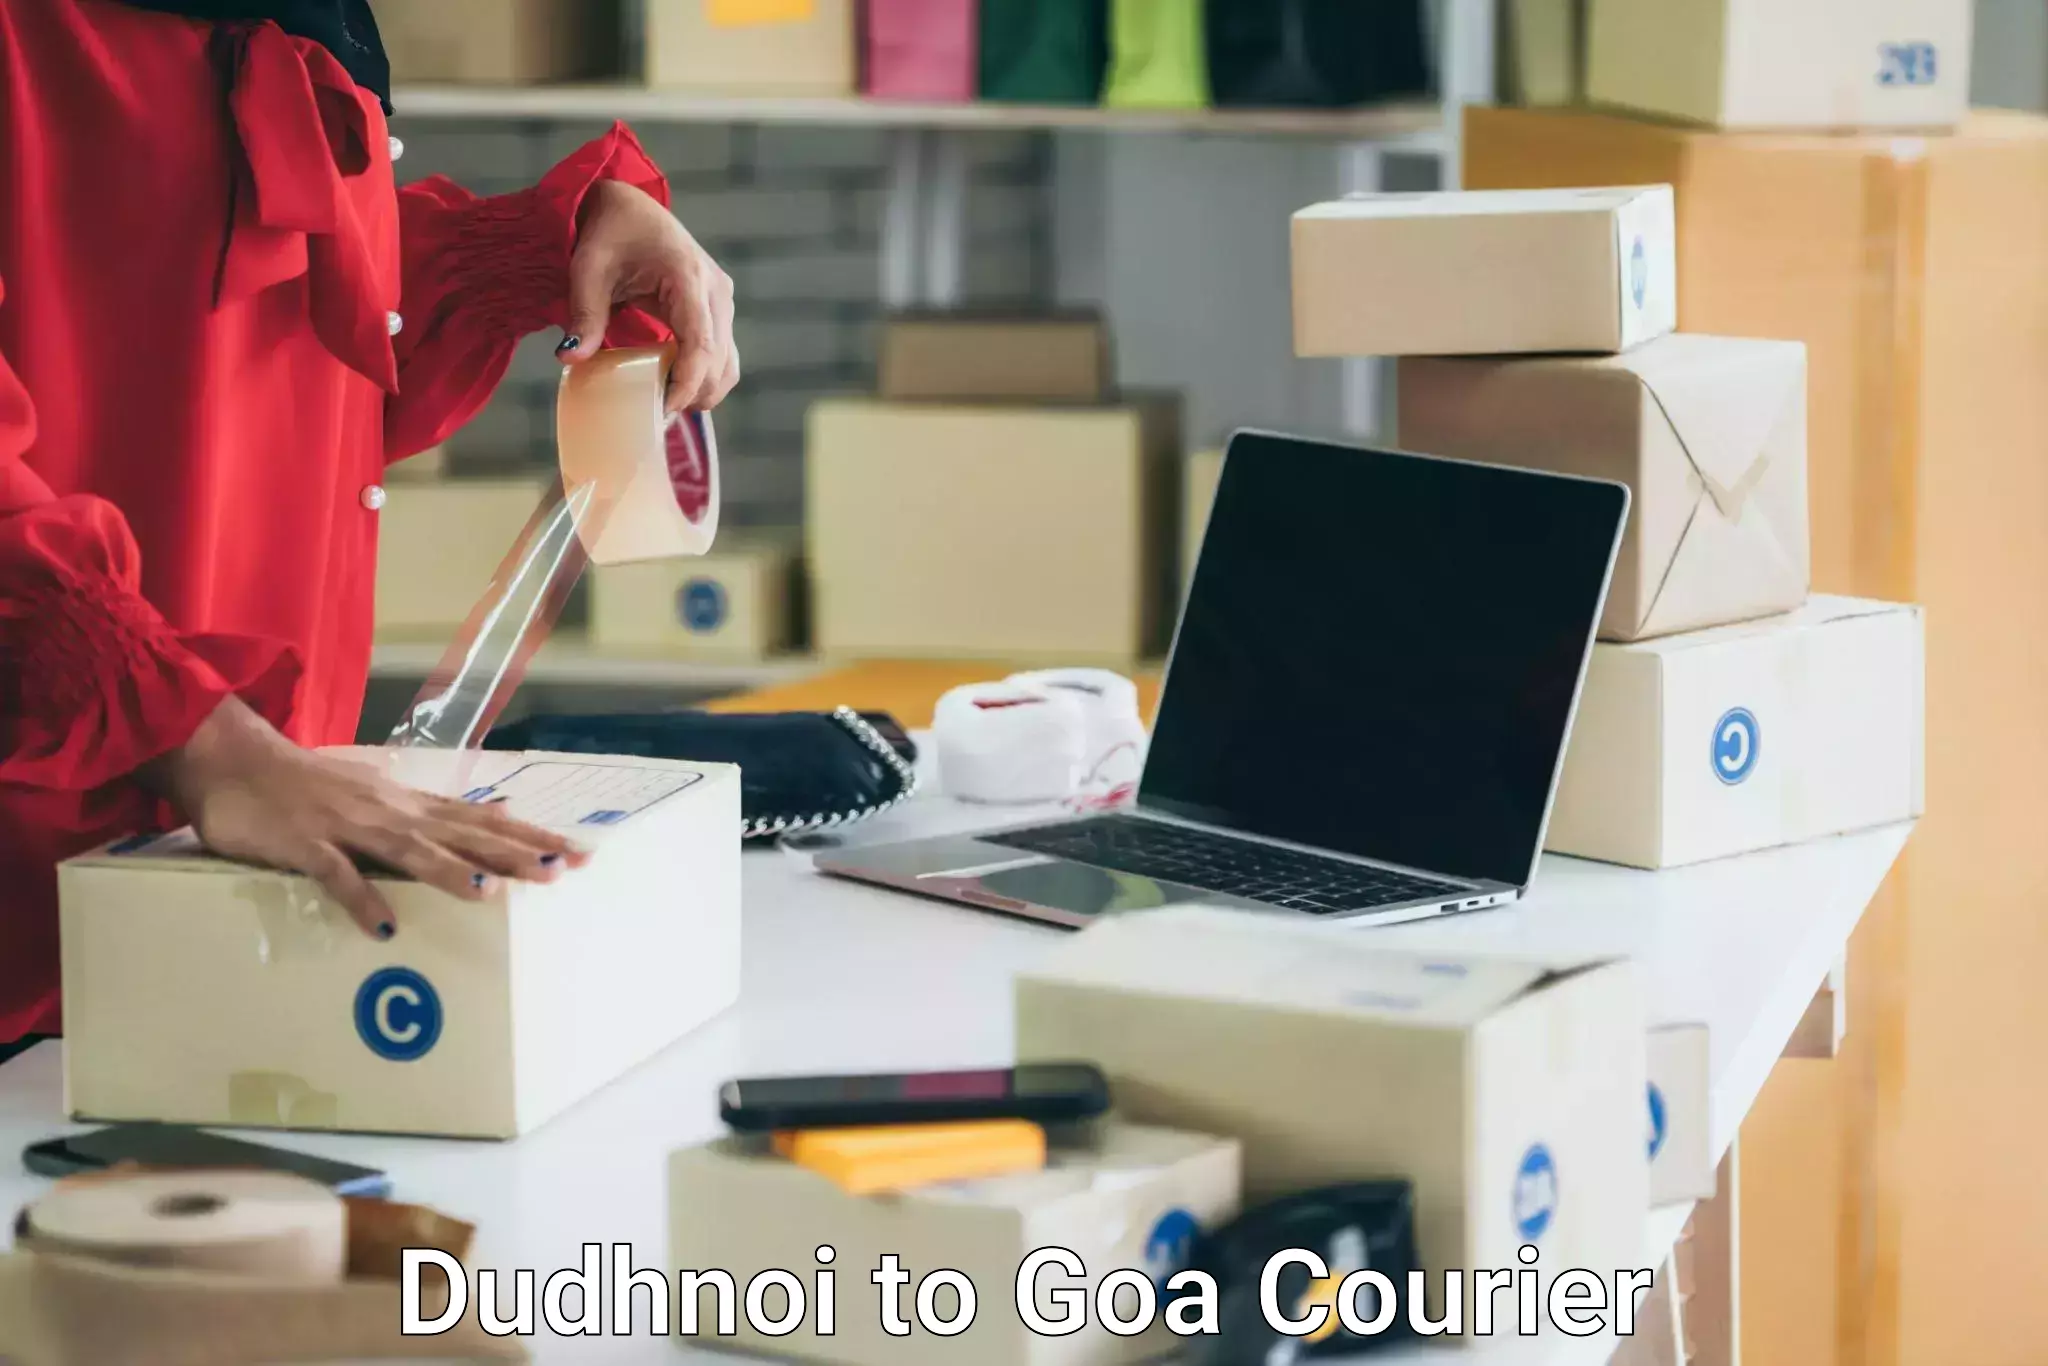 Reliable furniture transport Dudhnoi to Goa